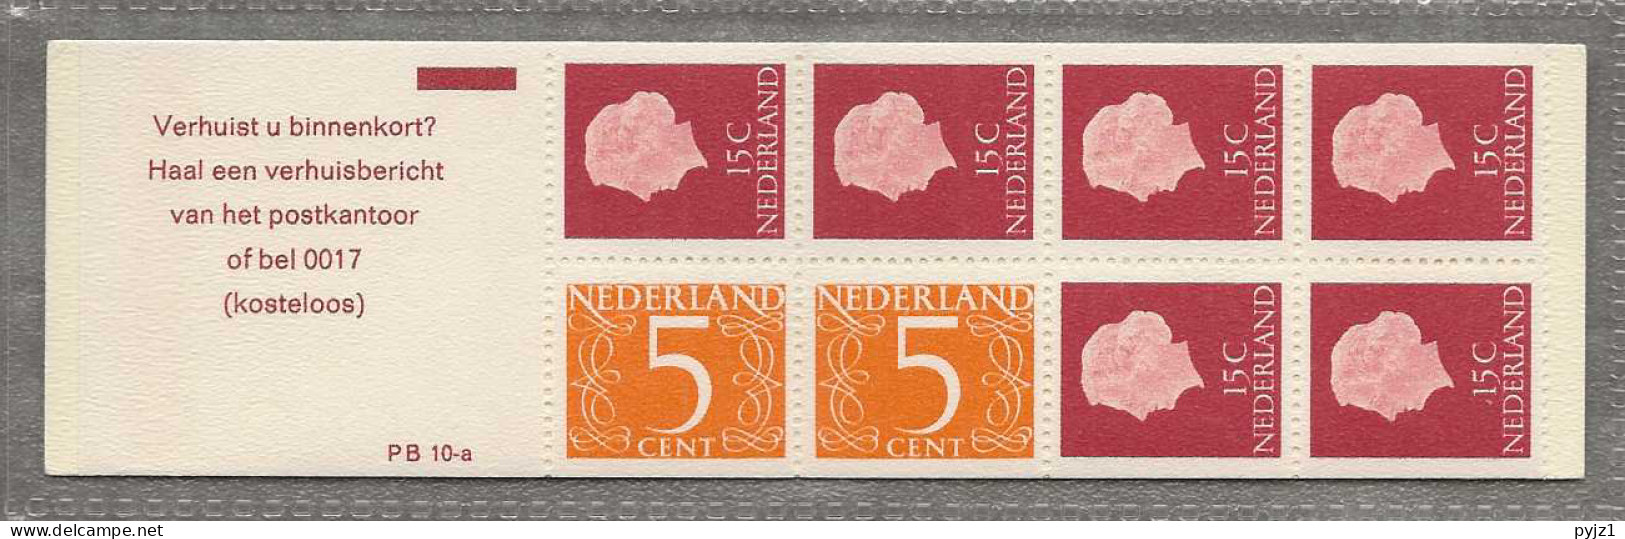 1971 MNH Nederland NVPH PB 10aF - Carnets Et Roulettes